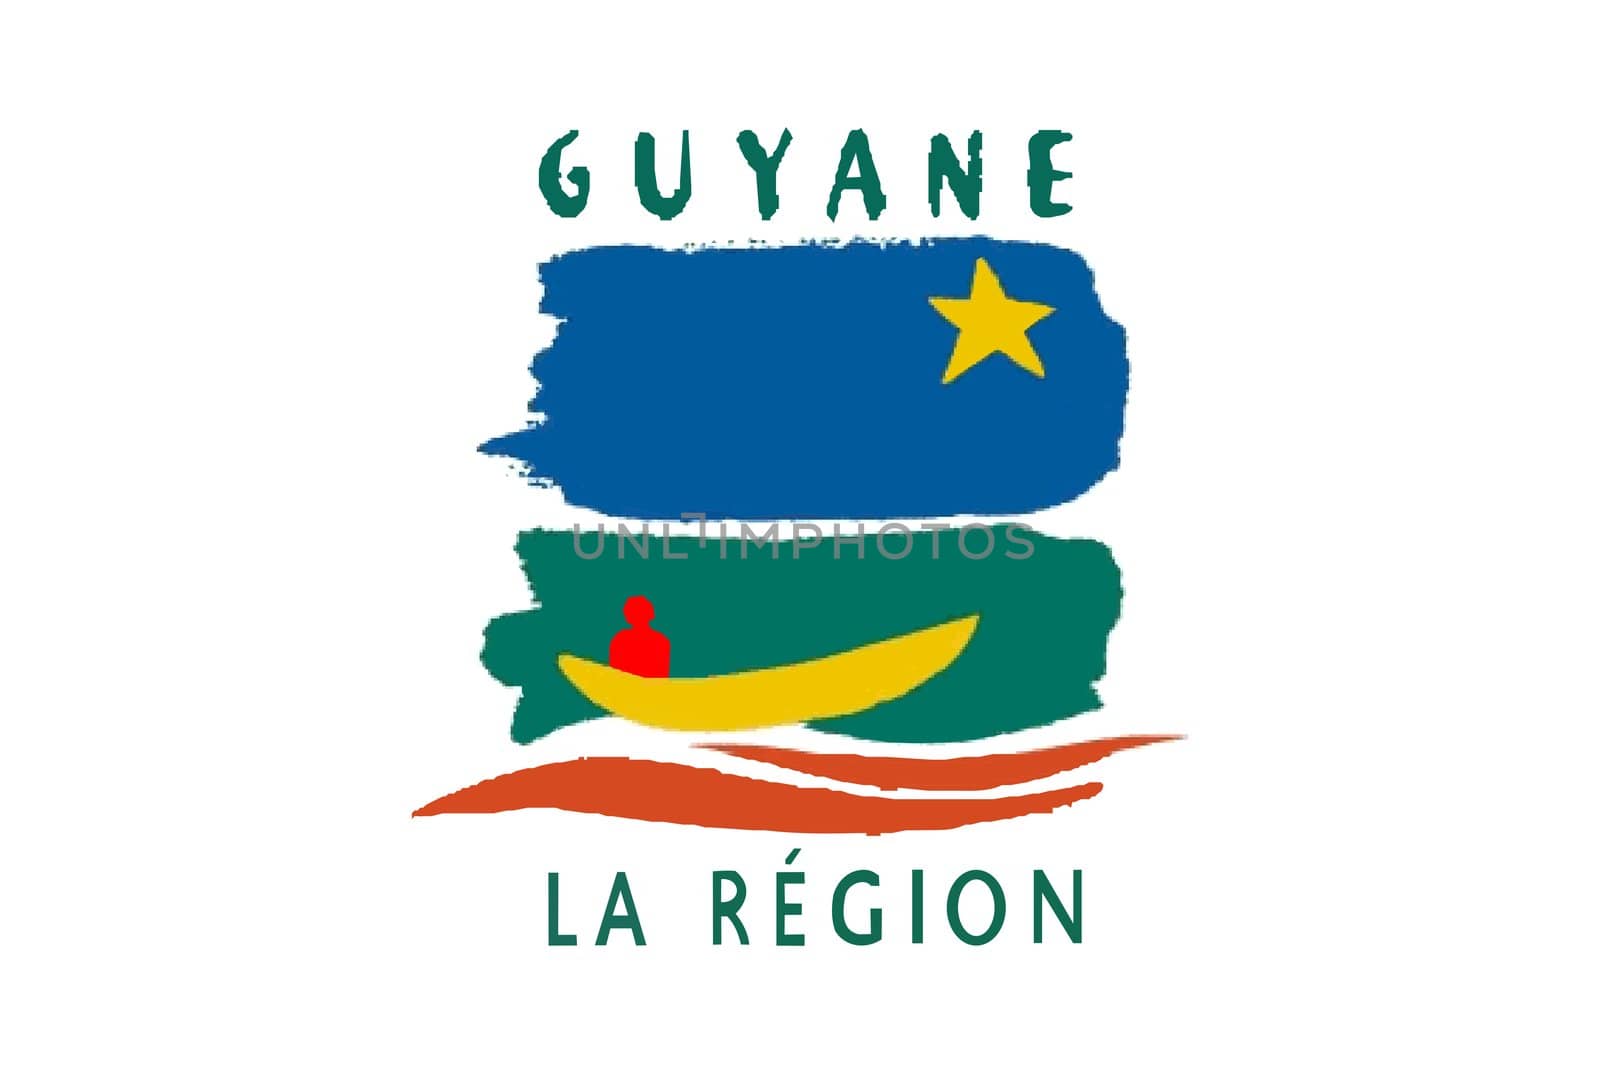 2D illustration of the flag of Guyane